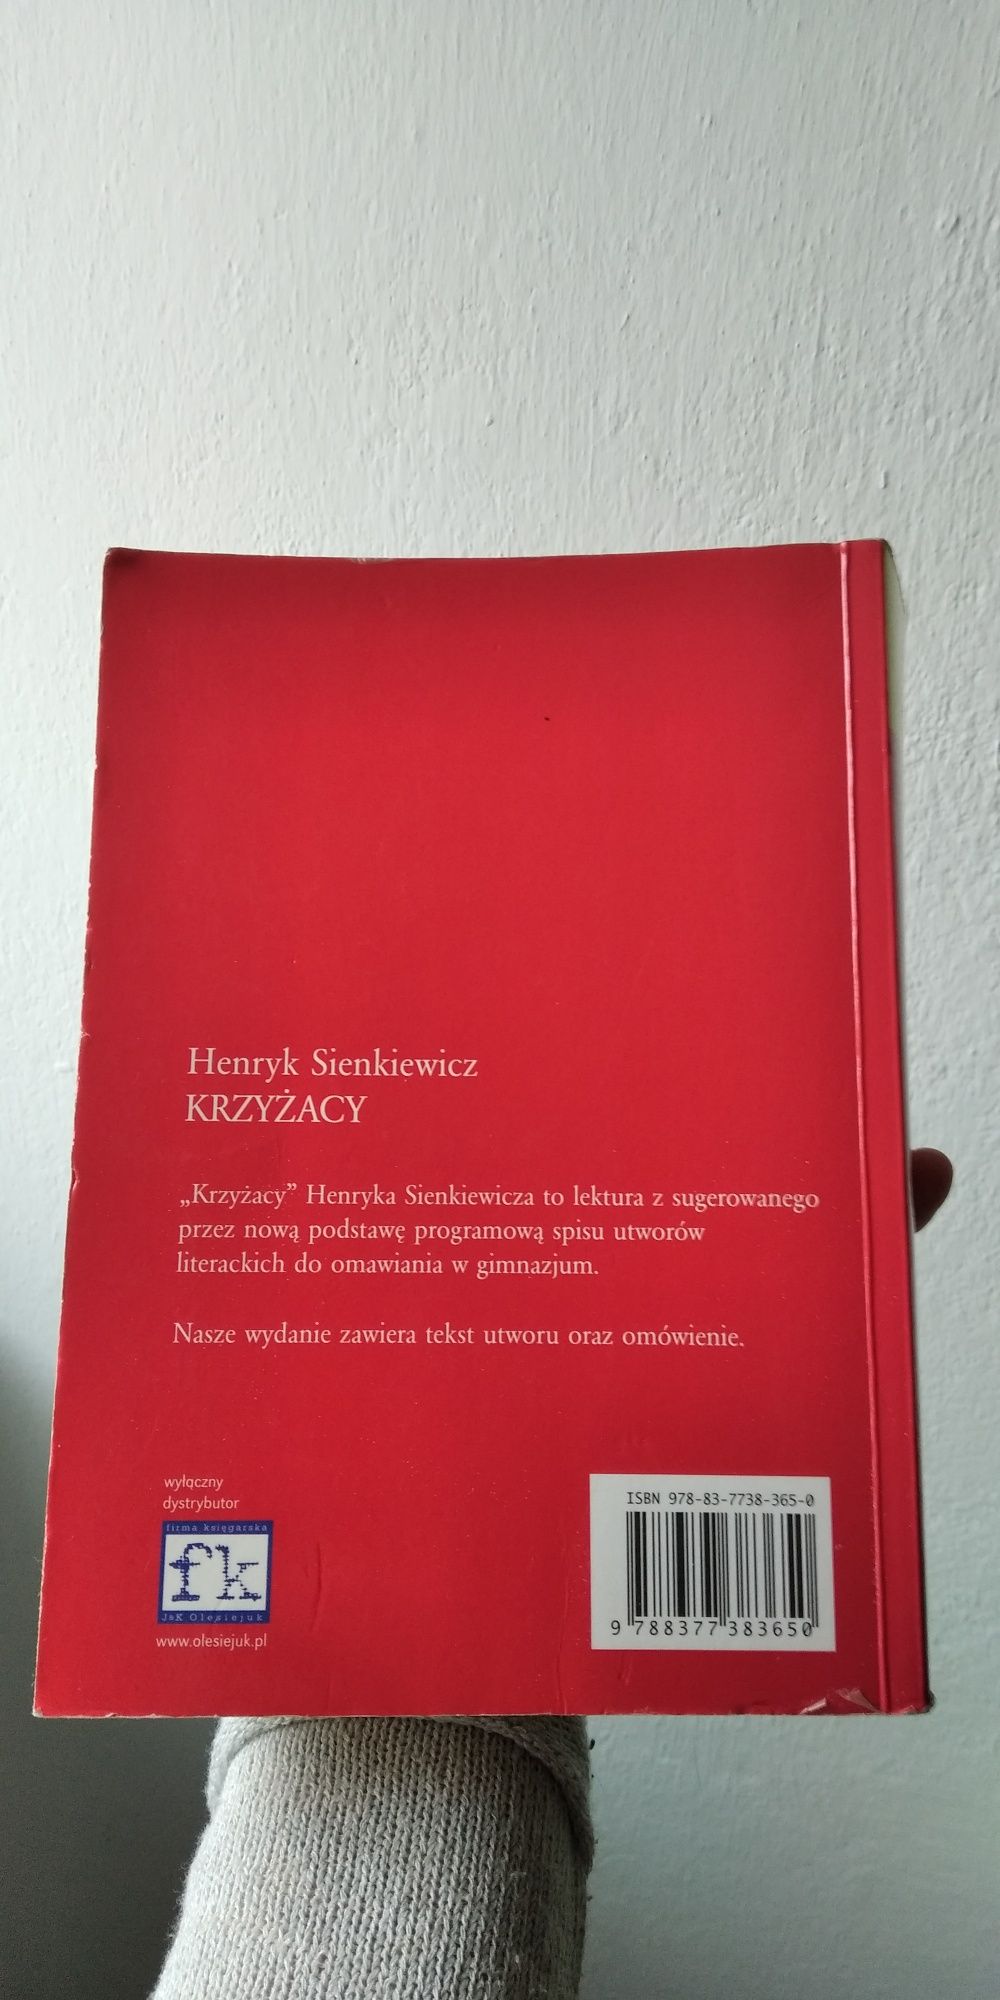 Książka ,,Krzyżacy" Henryk Sienkiewicz